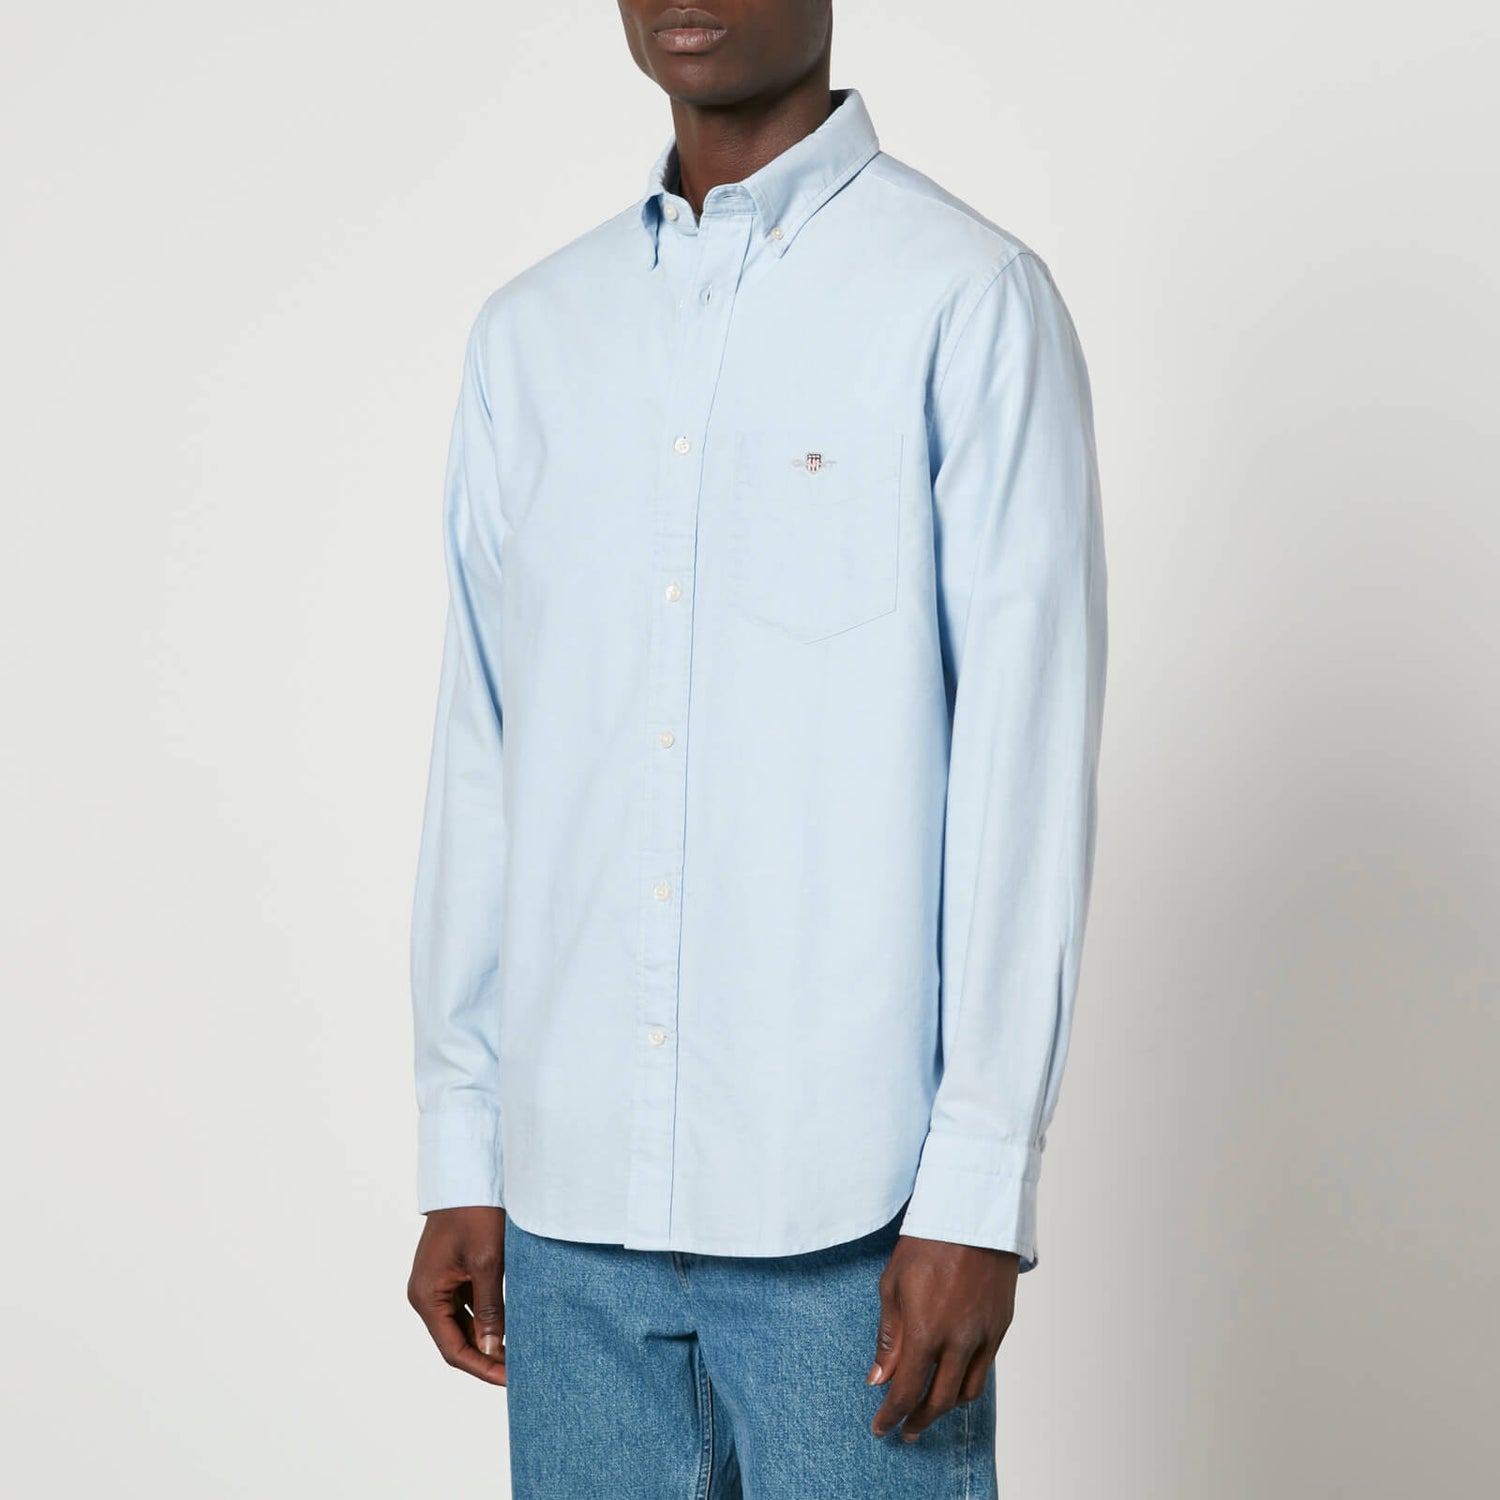 GANT Oxford Cotton Shirt - L